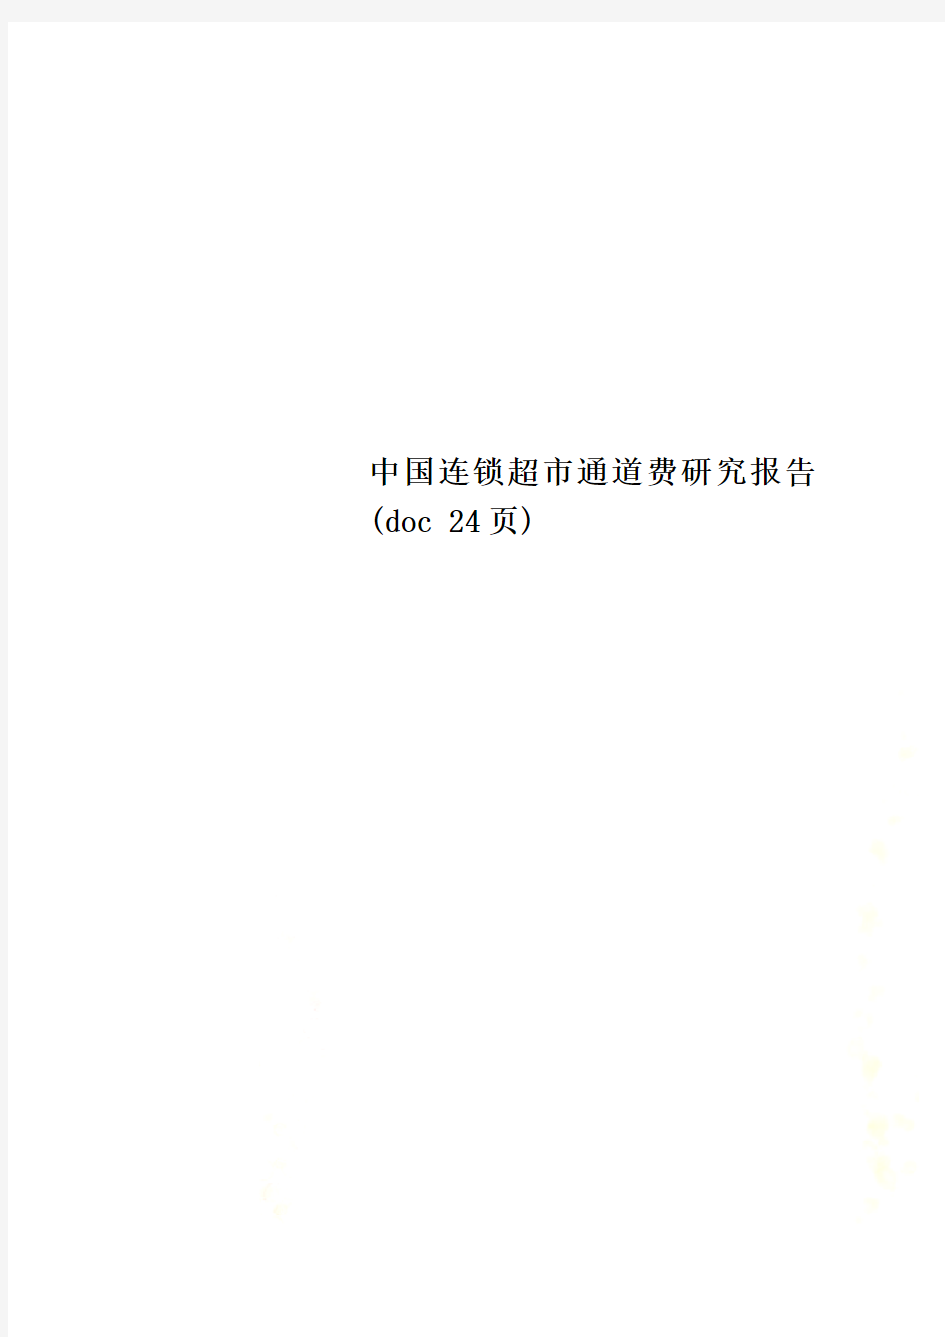 中国连锁超市通道费研究报告(doc 24页)